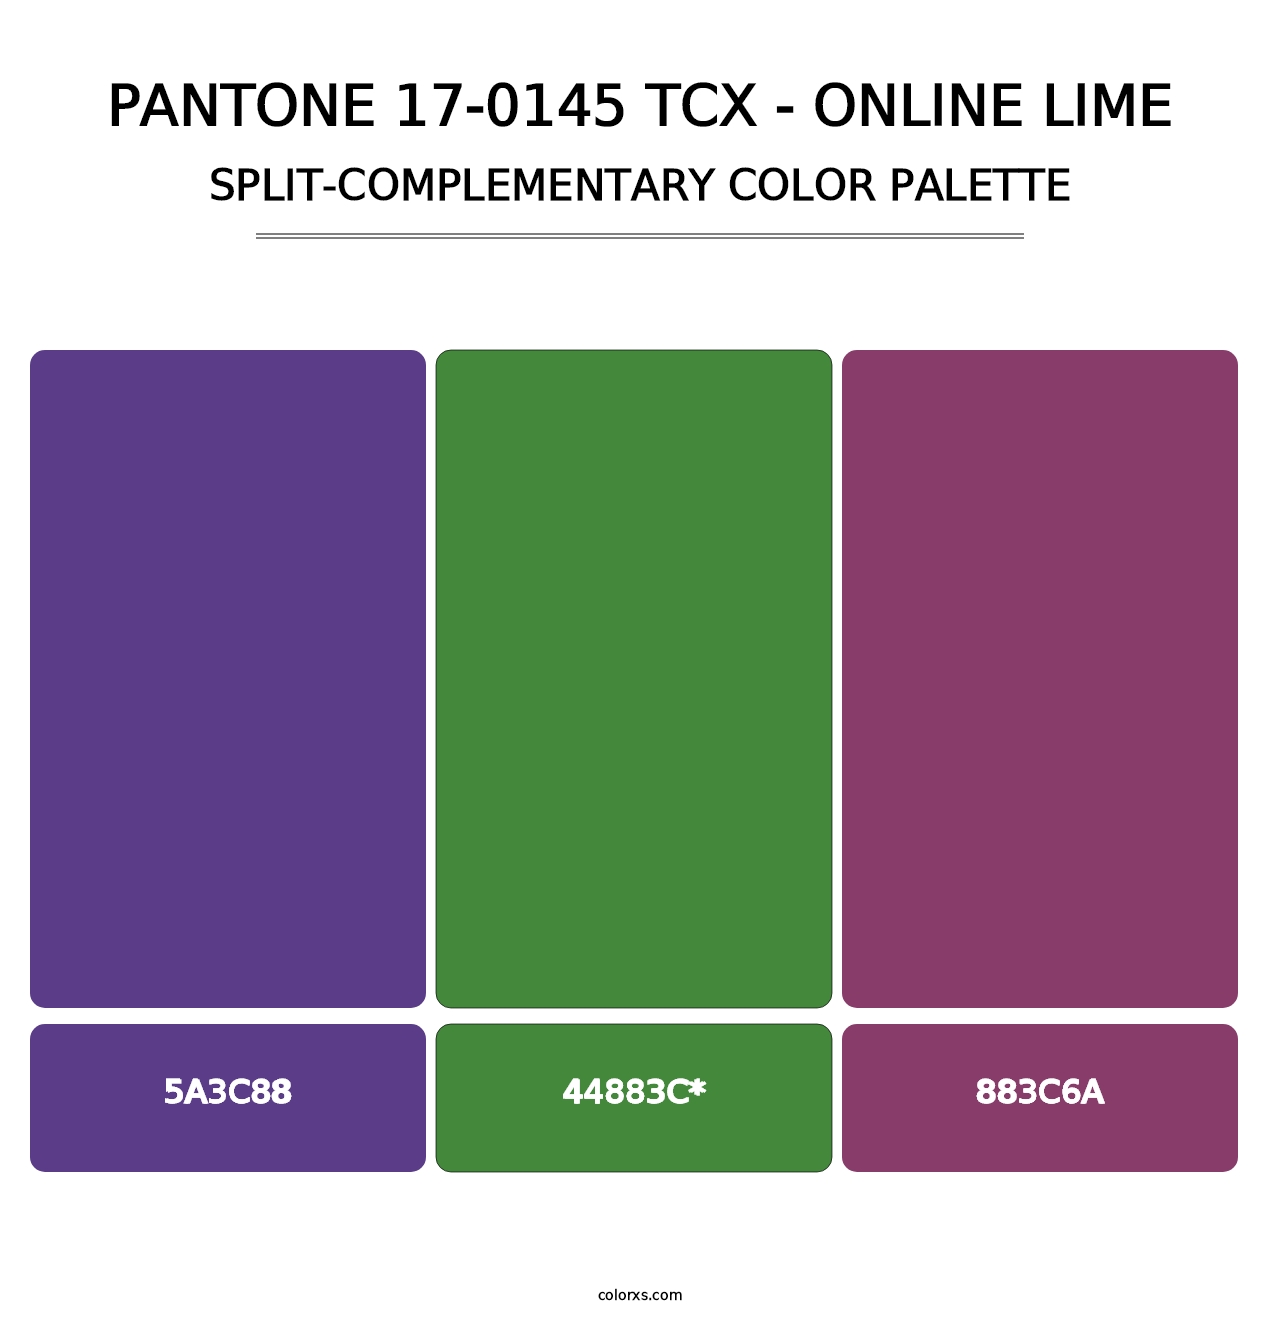 PANTONE 17-0145 TCX - Online Lime - Split-Complementary Color Palette